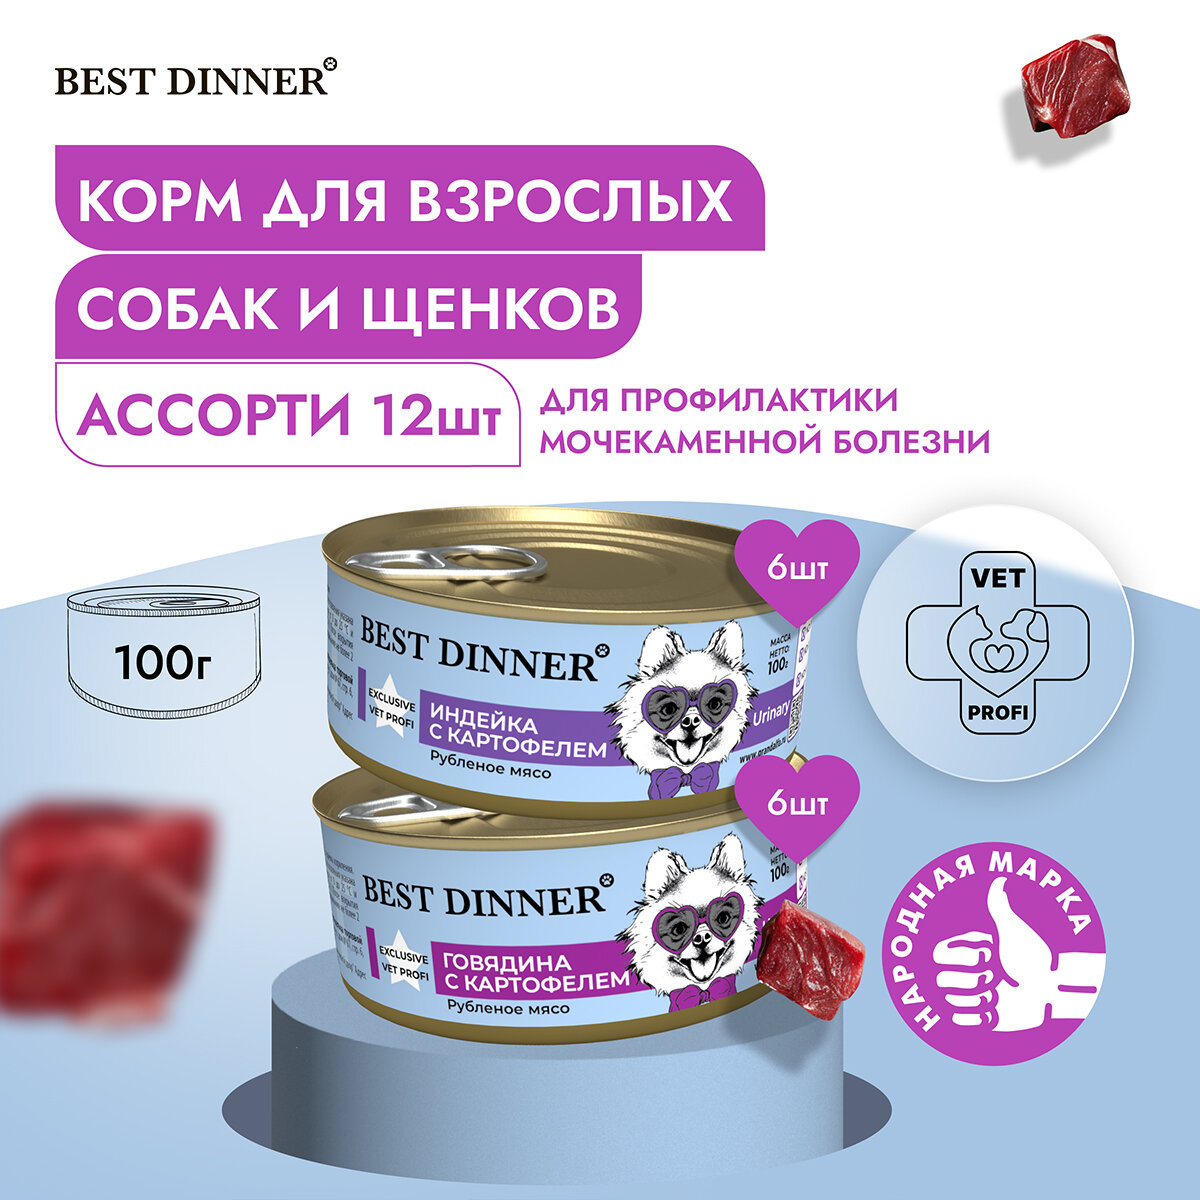 Влажный корм Best Dinner Vet Profi Urinary для собак любых пород Ассорти (12шт х 100гр)